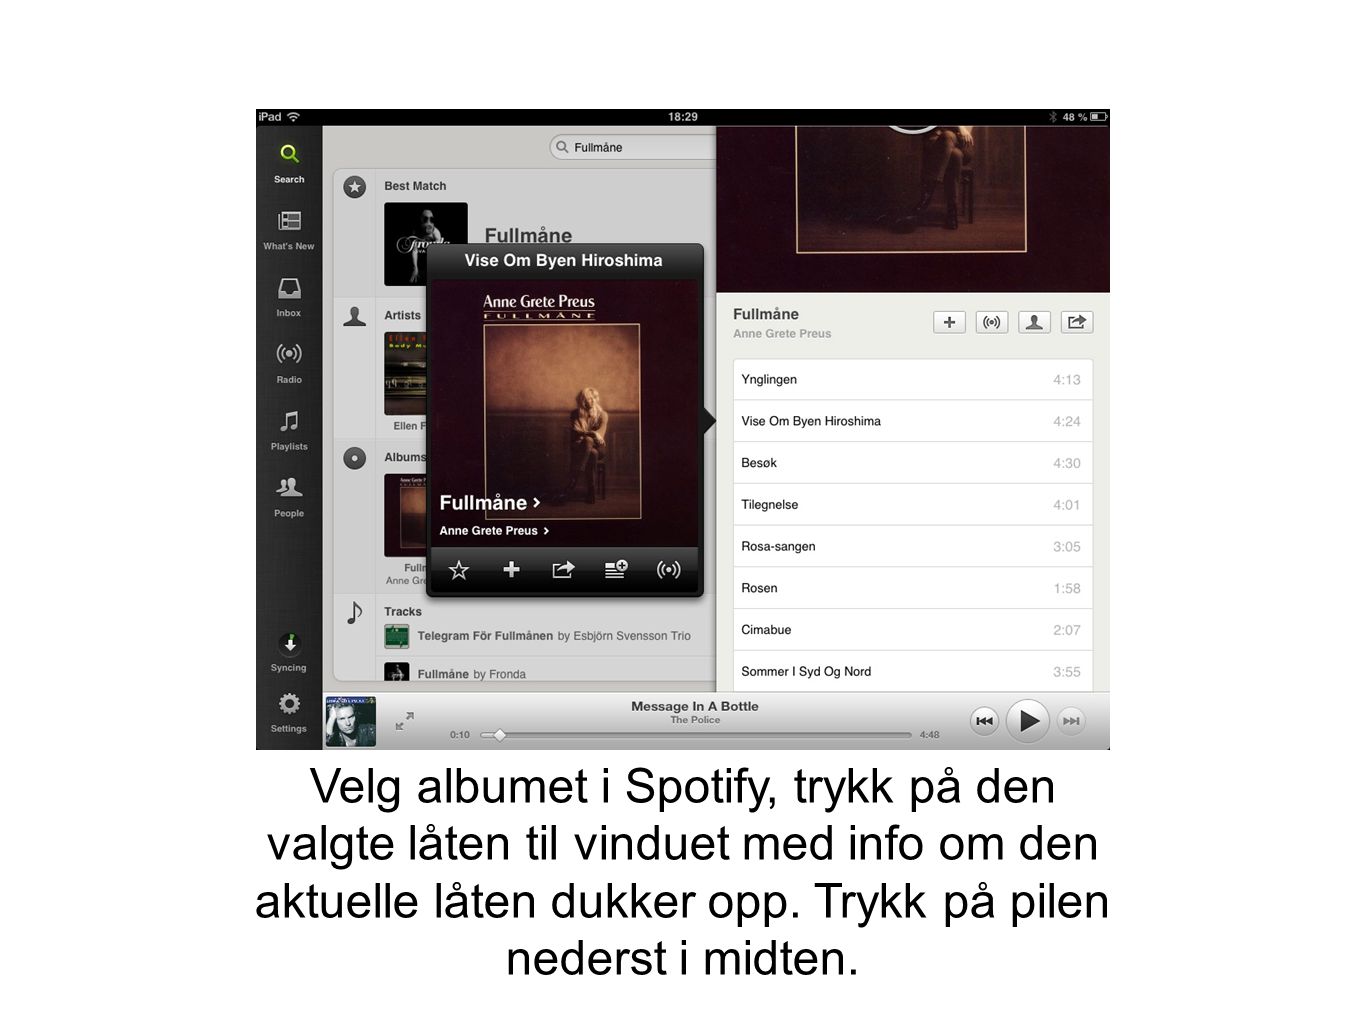 Velg albumet i Spotify, trykk på den valgte låten til vinduet med info om den aktuelle låten dukker opp.